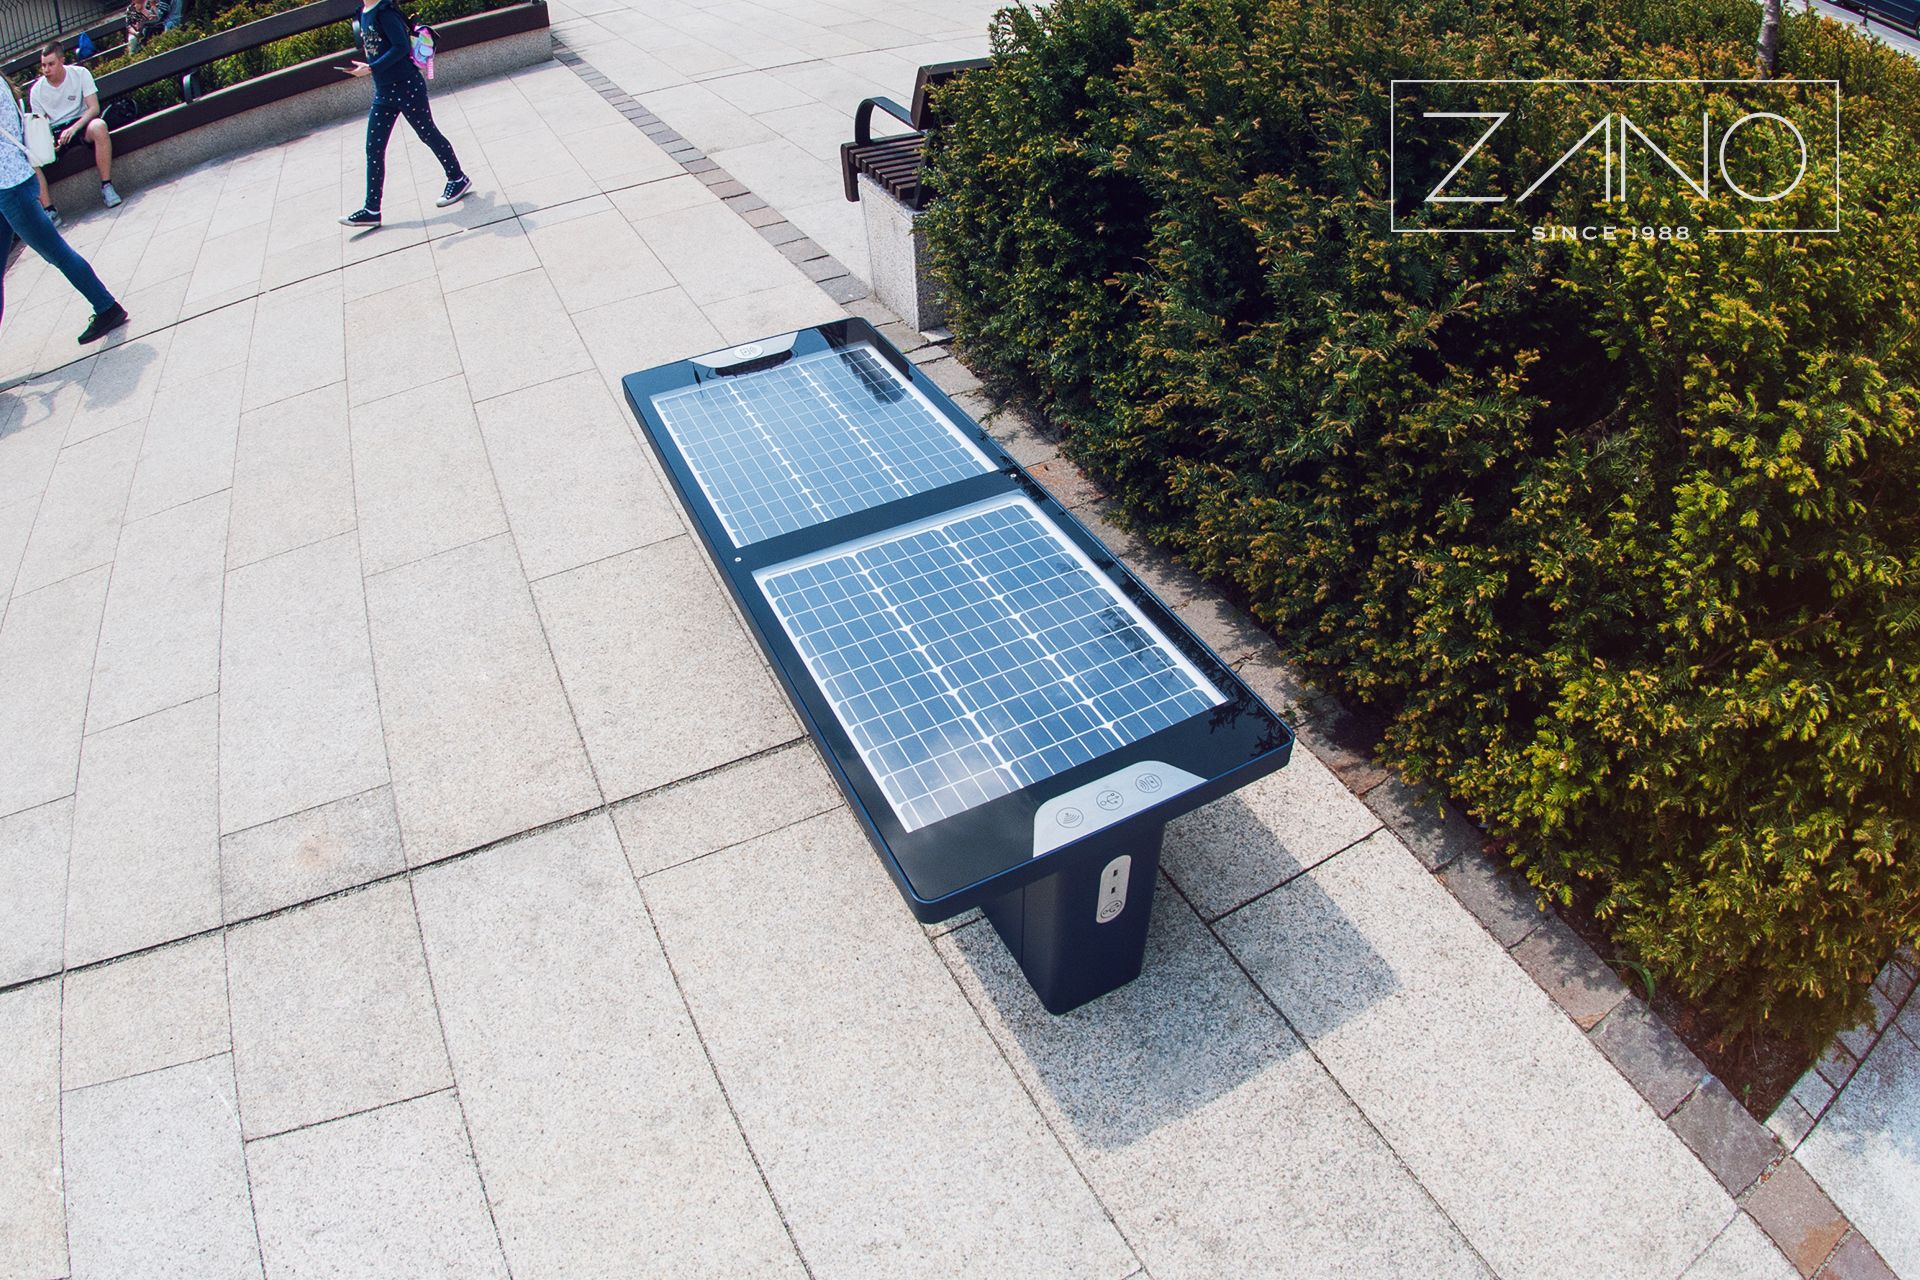 Nowoczesne ławki solarne wykonane ze stali, szkła akrylowego i paneli fotowoltaicznych.